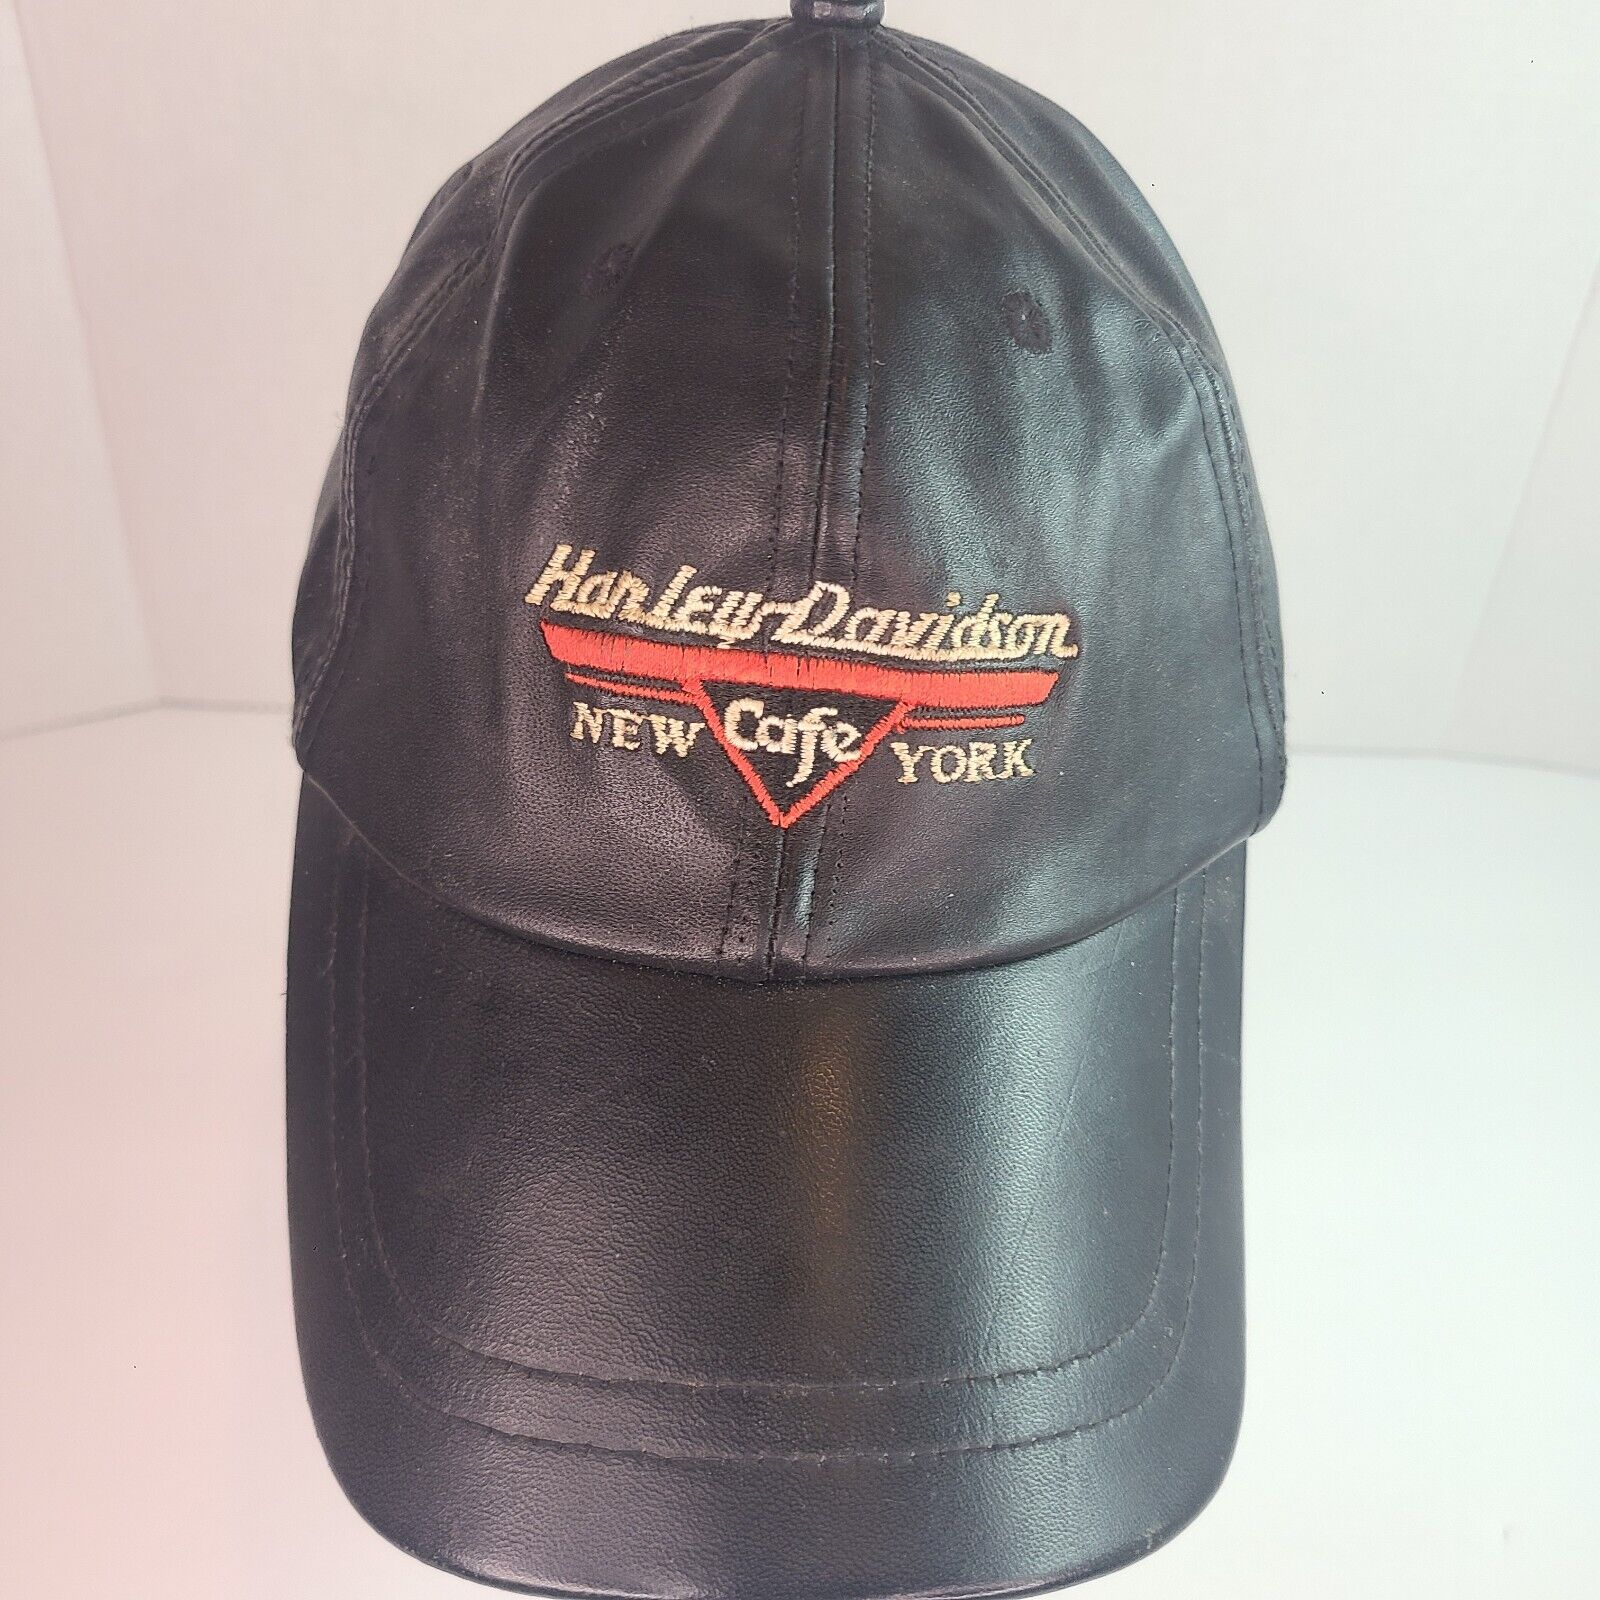 Vintage Harley Davidson Black Leather Hat New York Cafe 100% Leather Adjustable